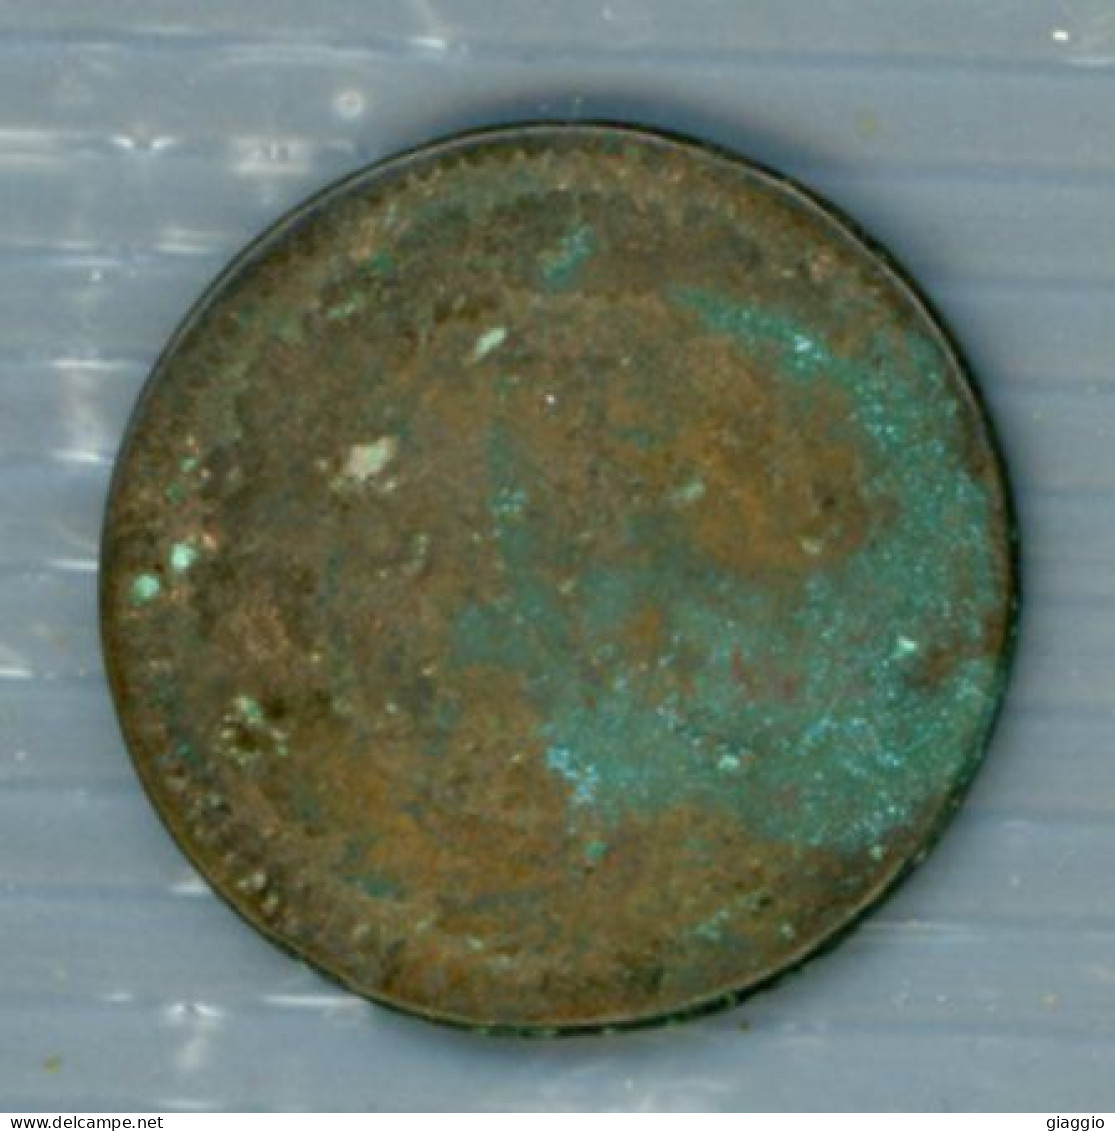 °°° Moneta N. 718 - Francia °°° - 1715-1774 Luigi XV Il Beneamato